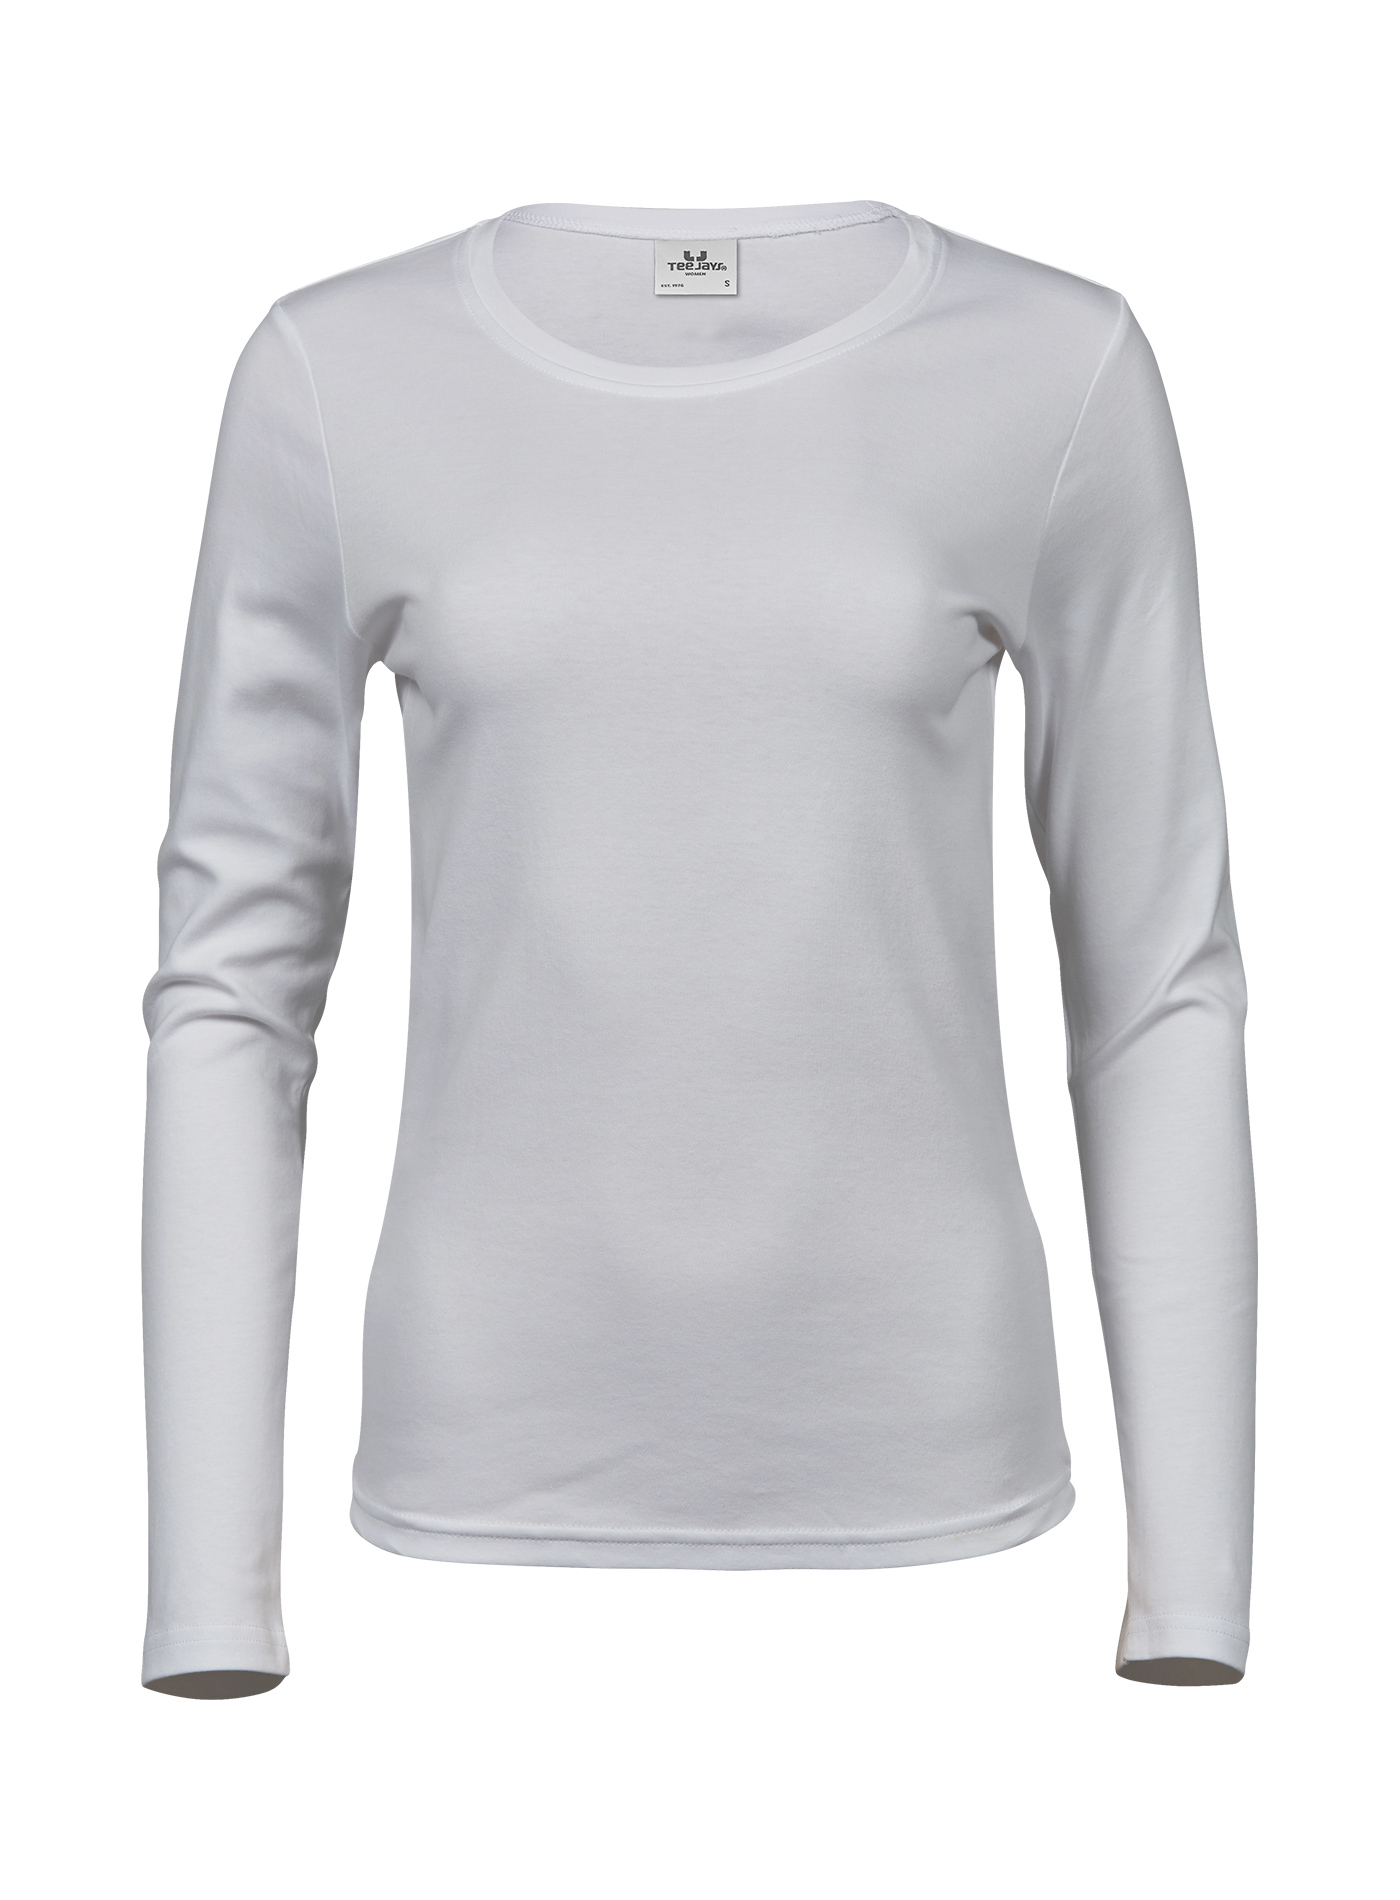 Dámské tričko s dlouhými rukávy Tee Jays Interlock - Bílá XL